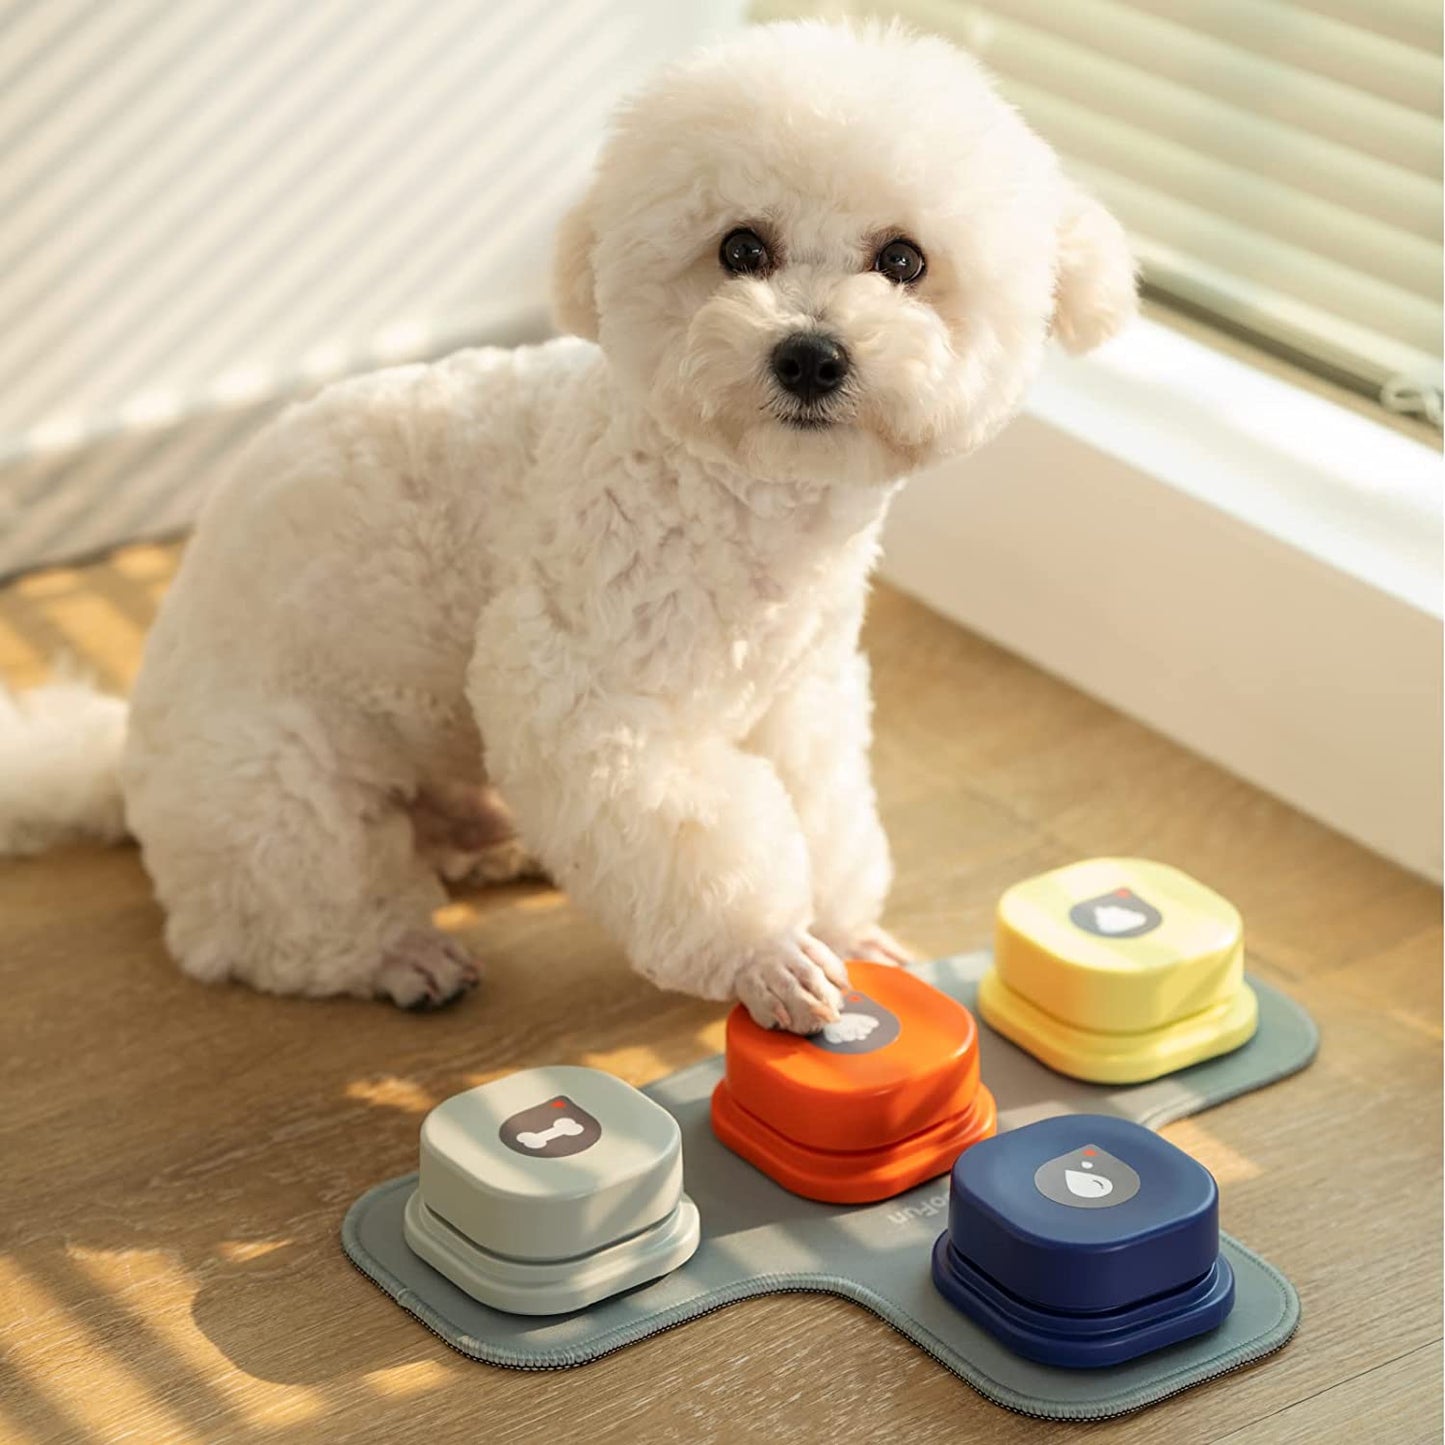 Comunicación Canina Avanzada: Botón de Grabación Parlante para Perro, el Juguete Inteligente que Fortalece el Vínculo